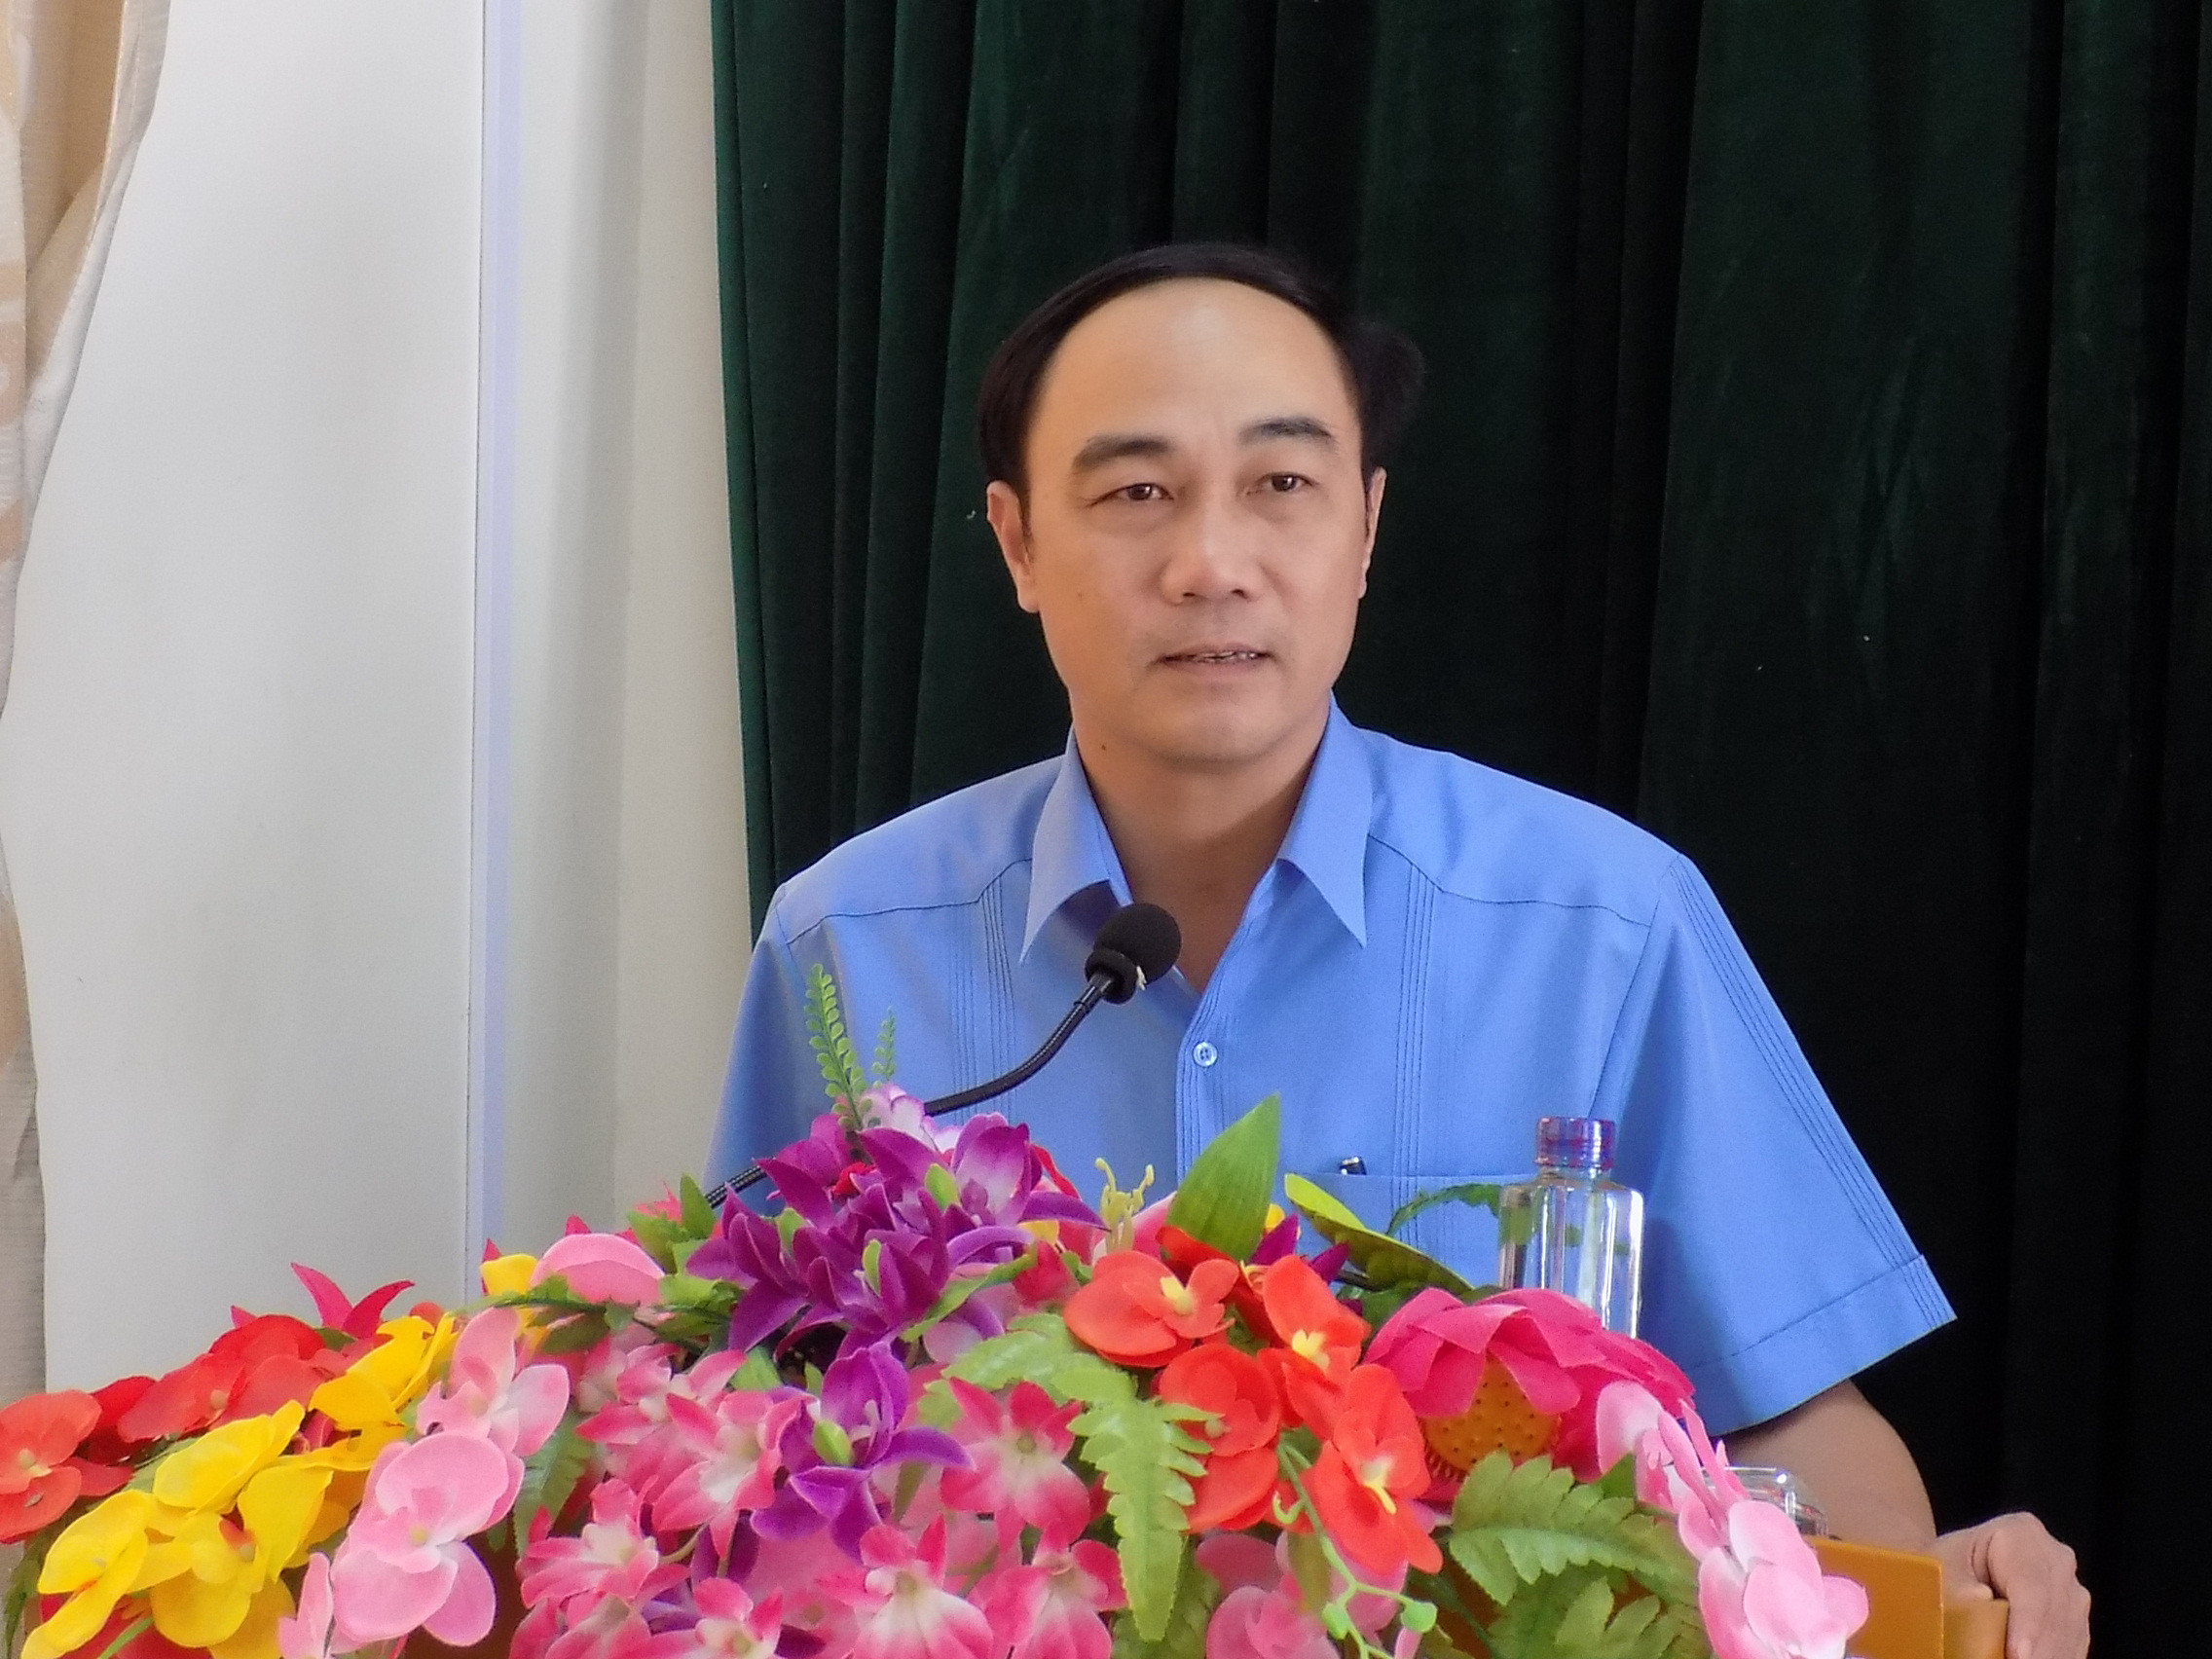 Đồng chí Trần Quốc Khánh - Phó trưởng Ban Tuyên giáo Tỉnh ủy phát biểu tại buổi khai mạc thao giảng và kiểm tra cụm 2. Ảnh: Thu Hường